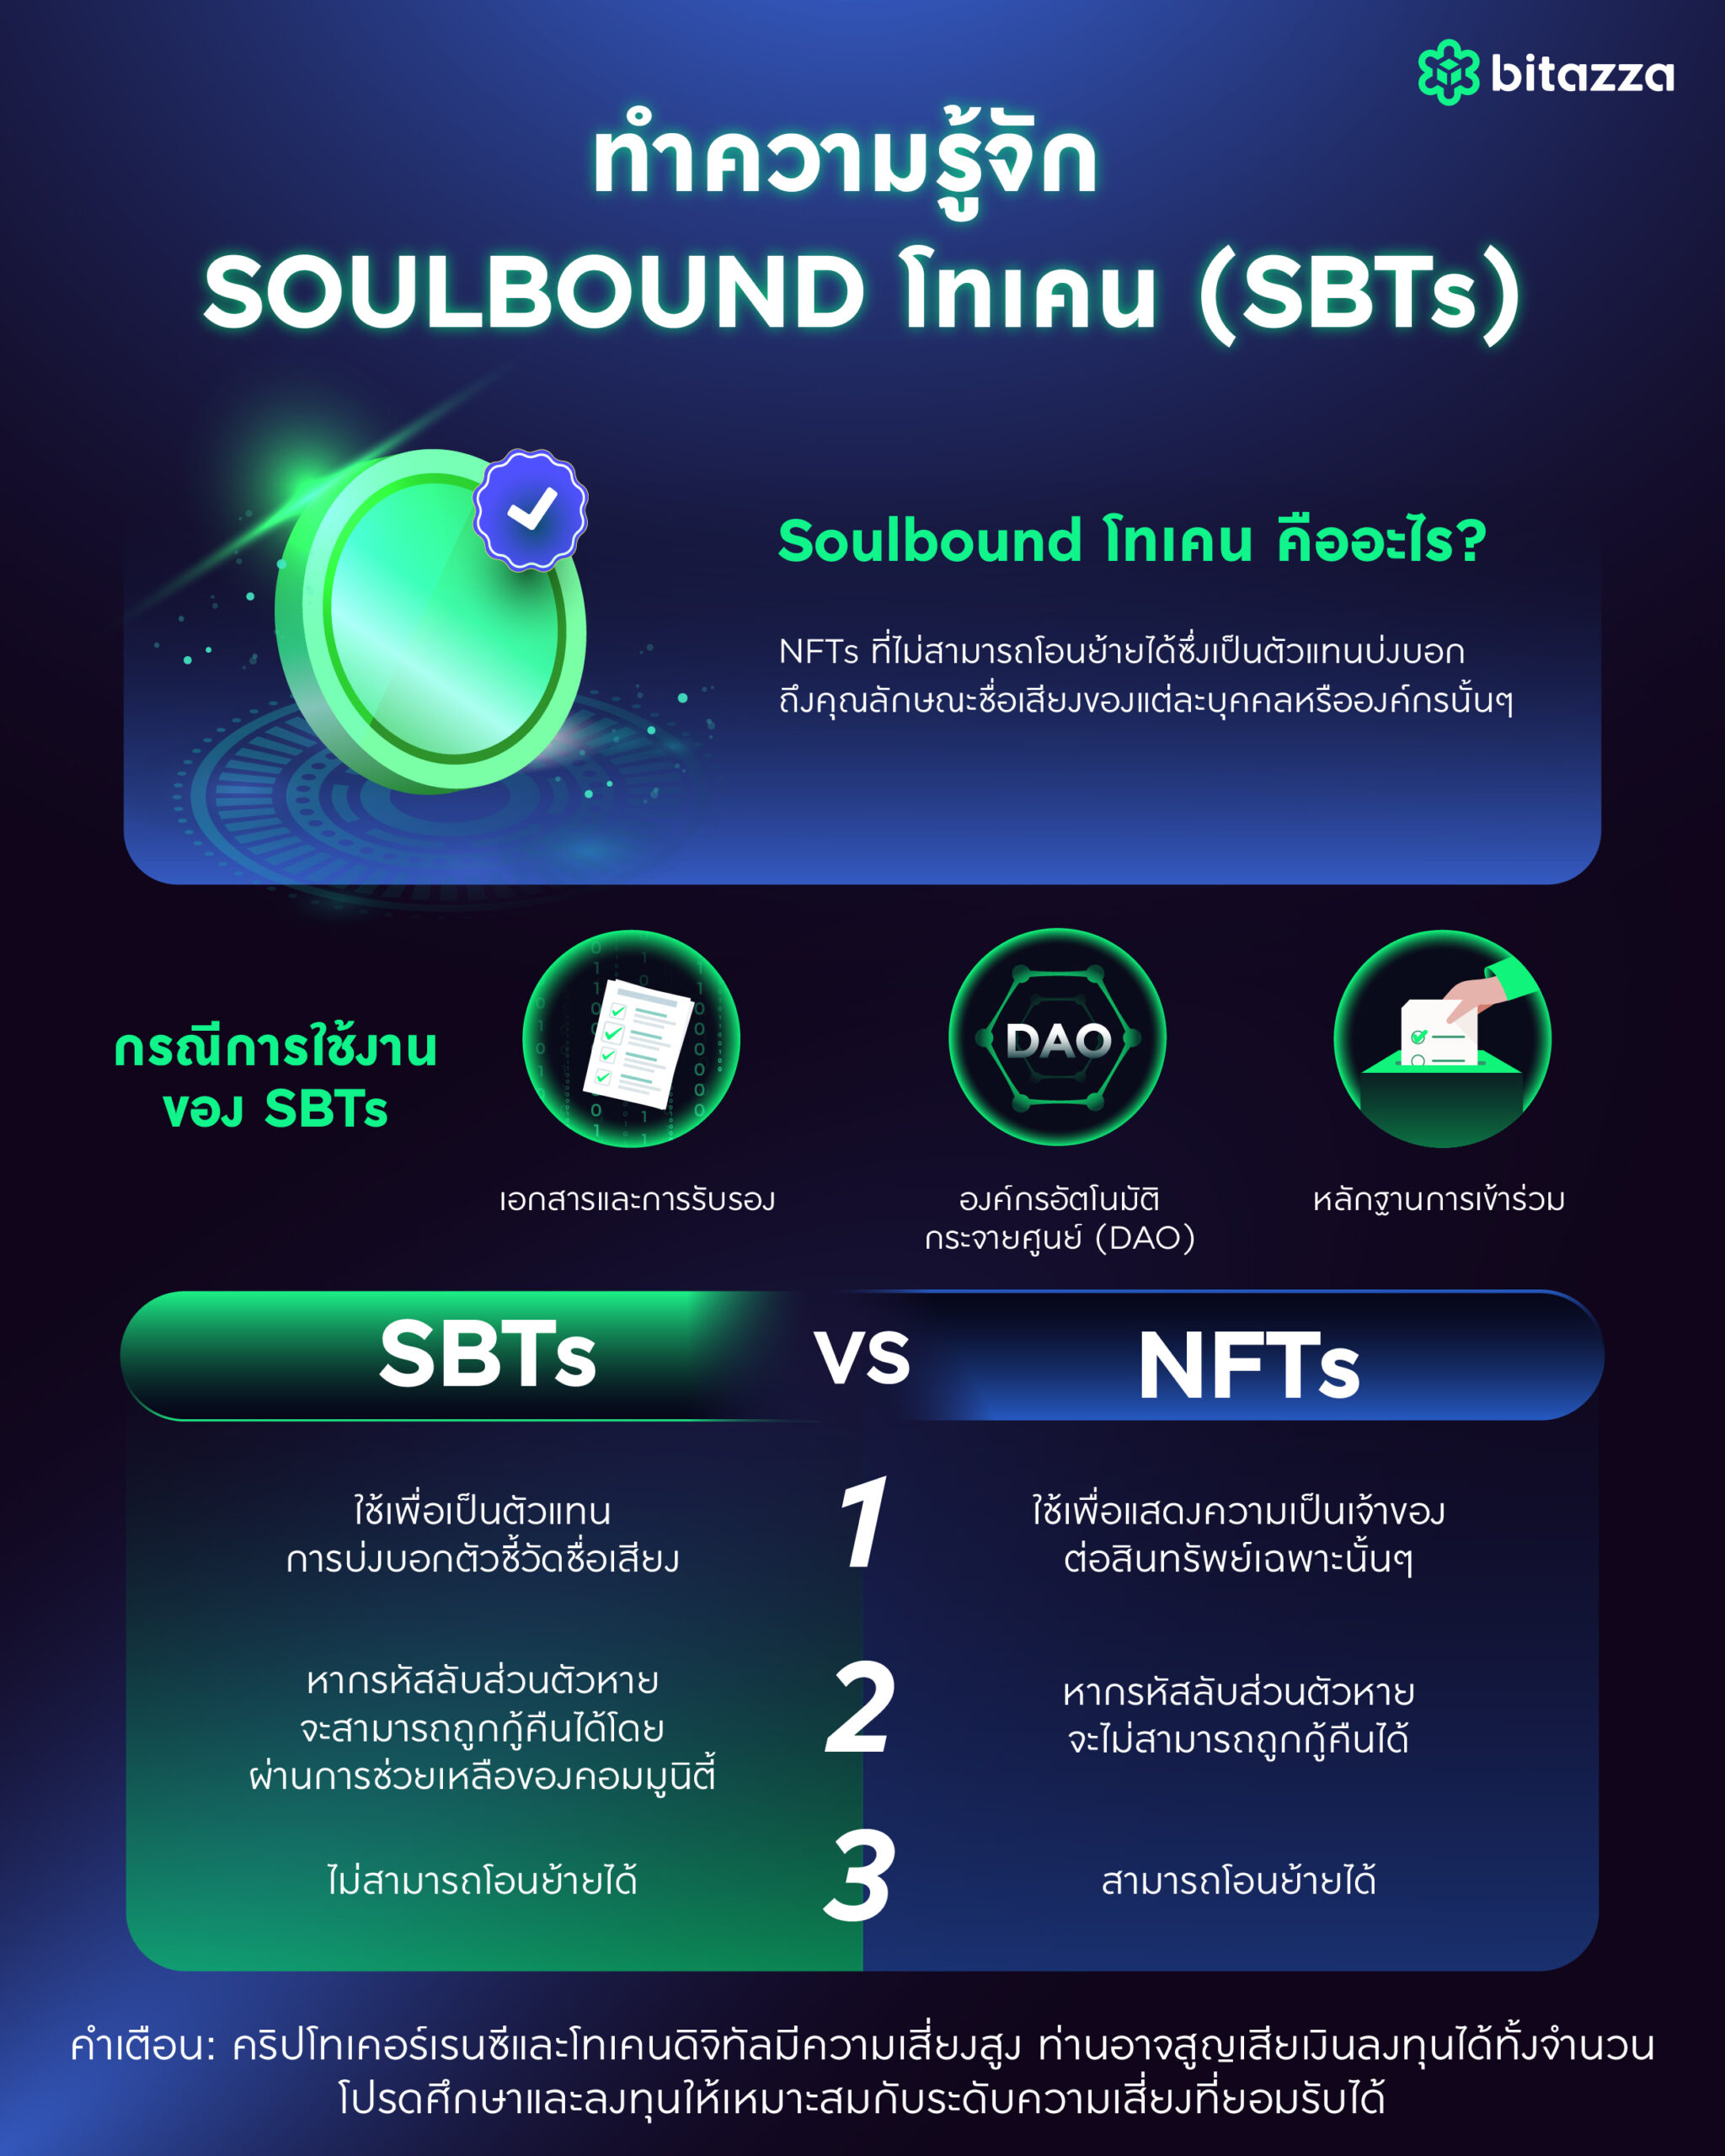 ทำความรู้จักกับ Soulbound โทเคน (Sbts) - Bitazza Content Hub